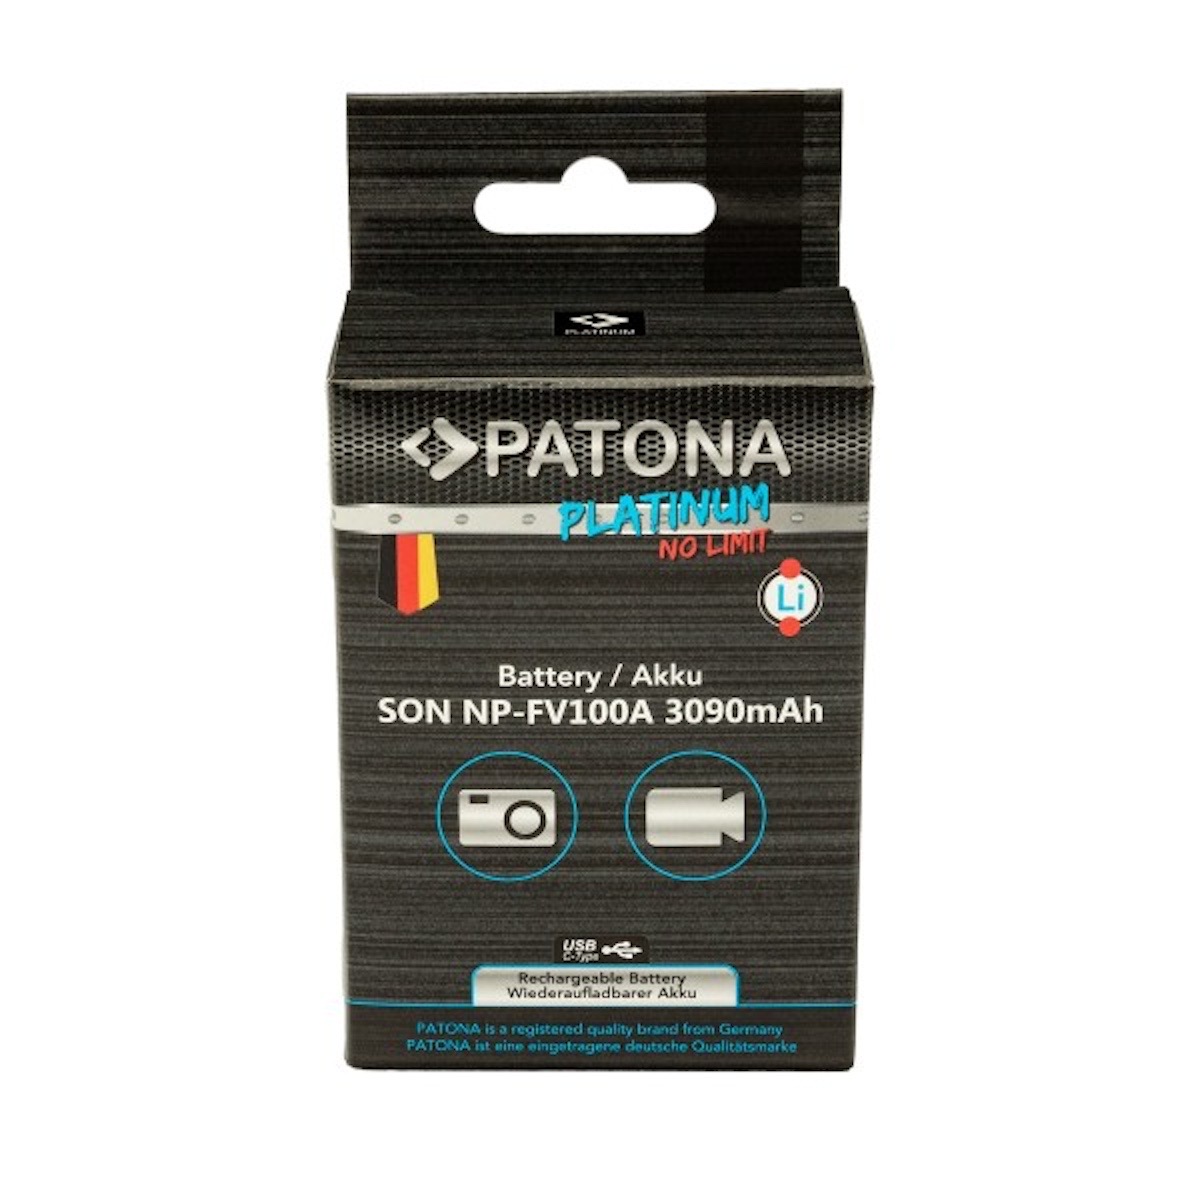 Patona Platinum Akku mit USB-C Input f. Sony NP-FV100